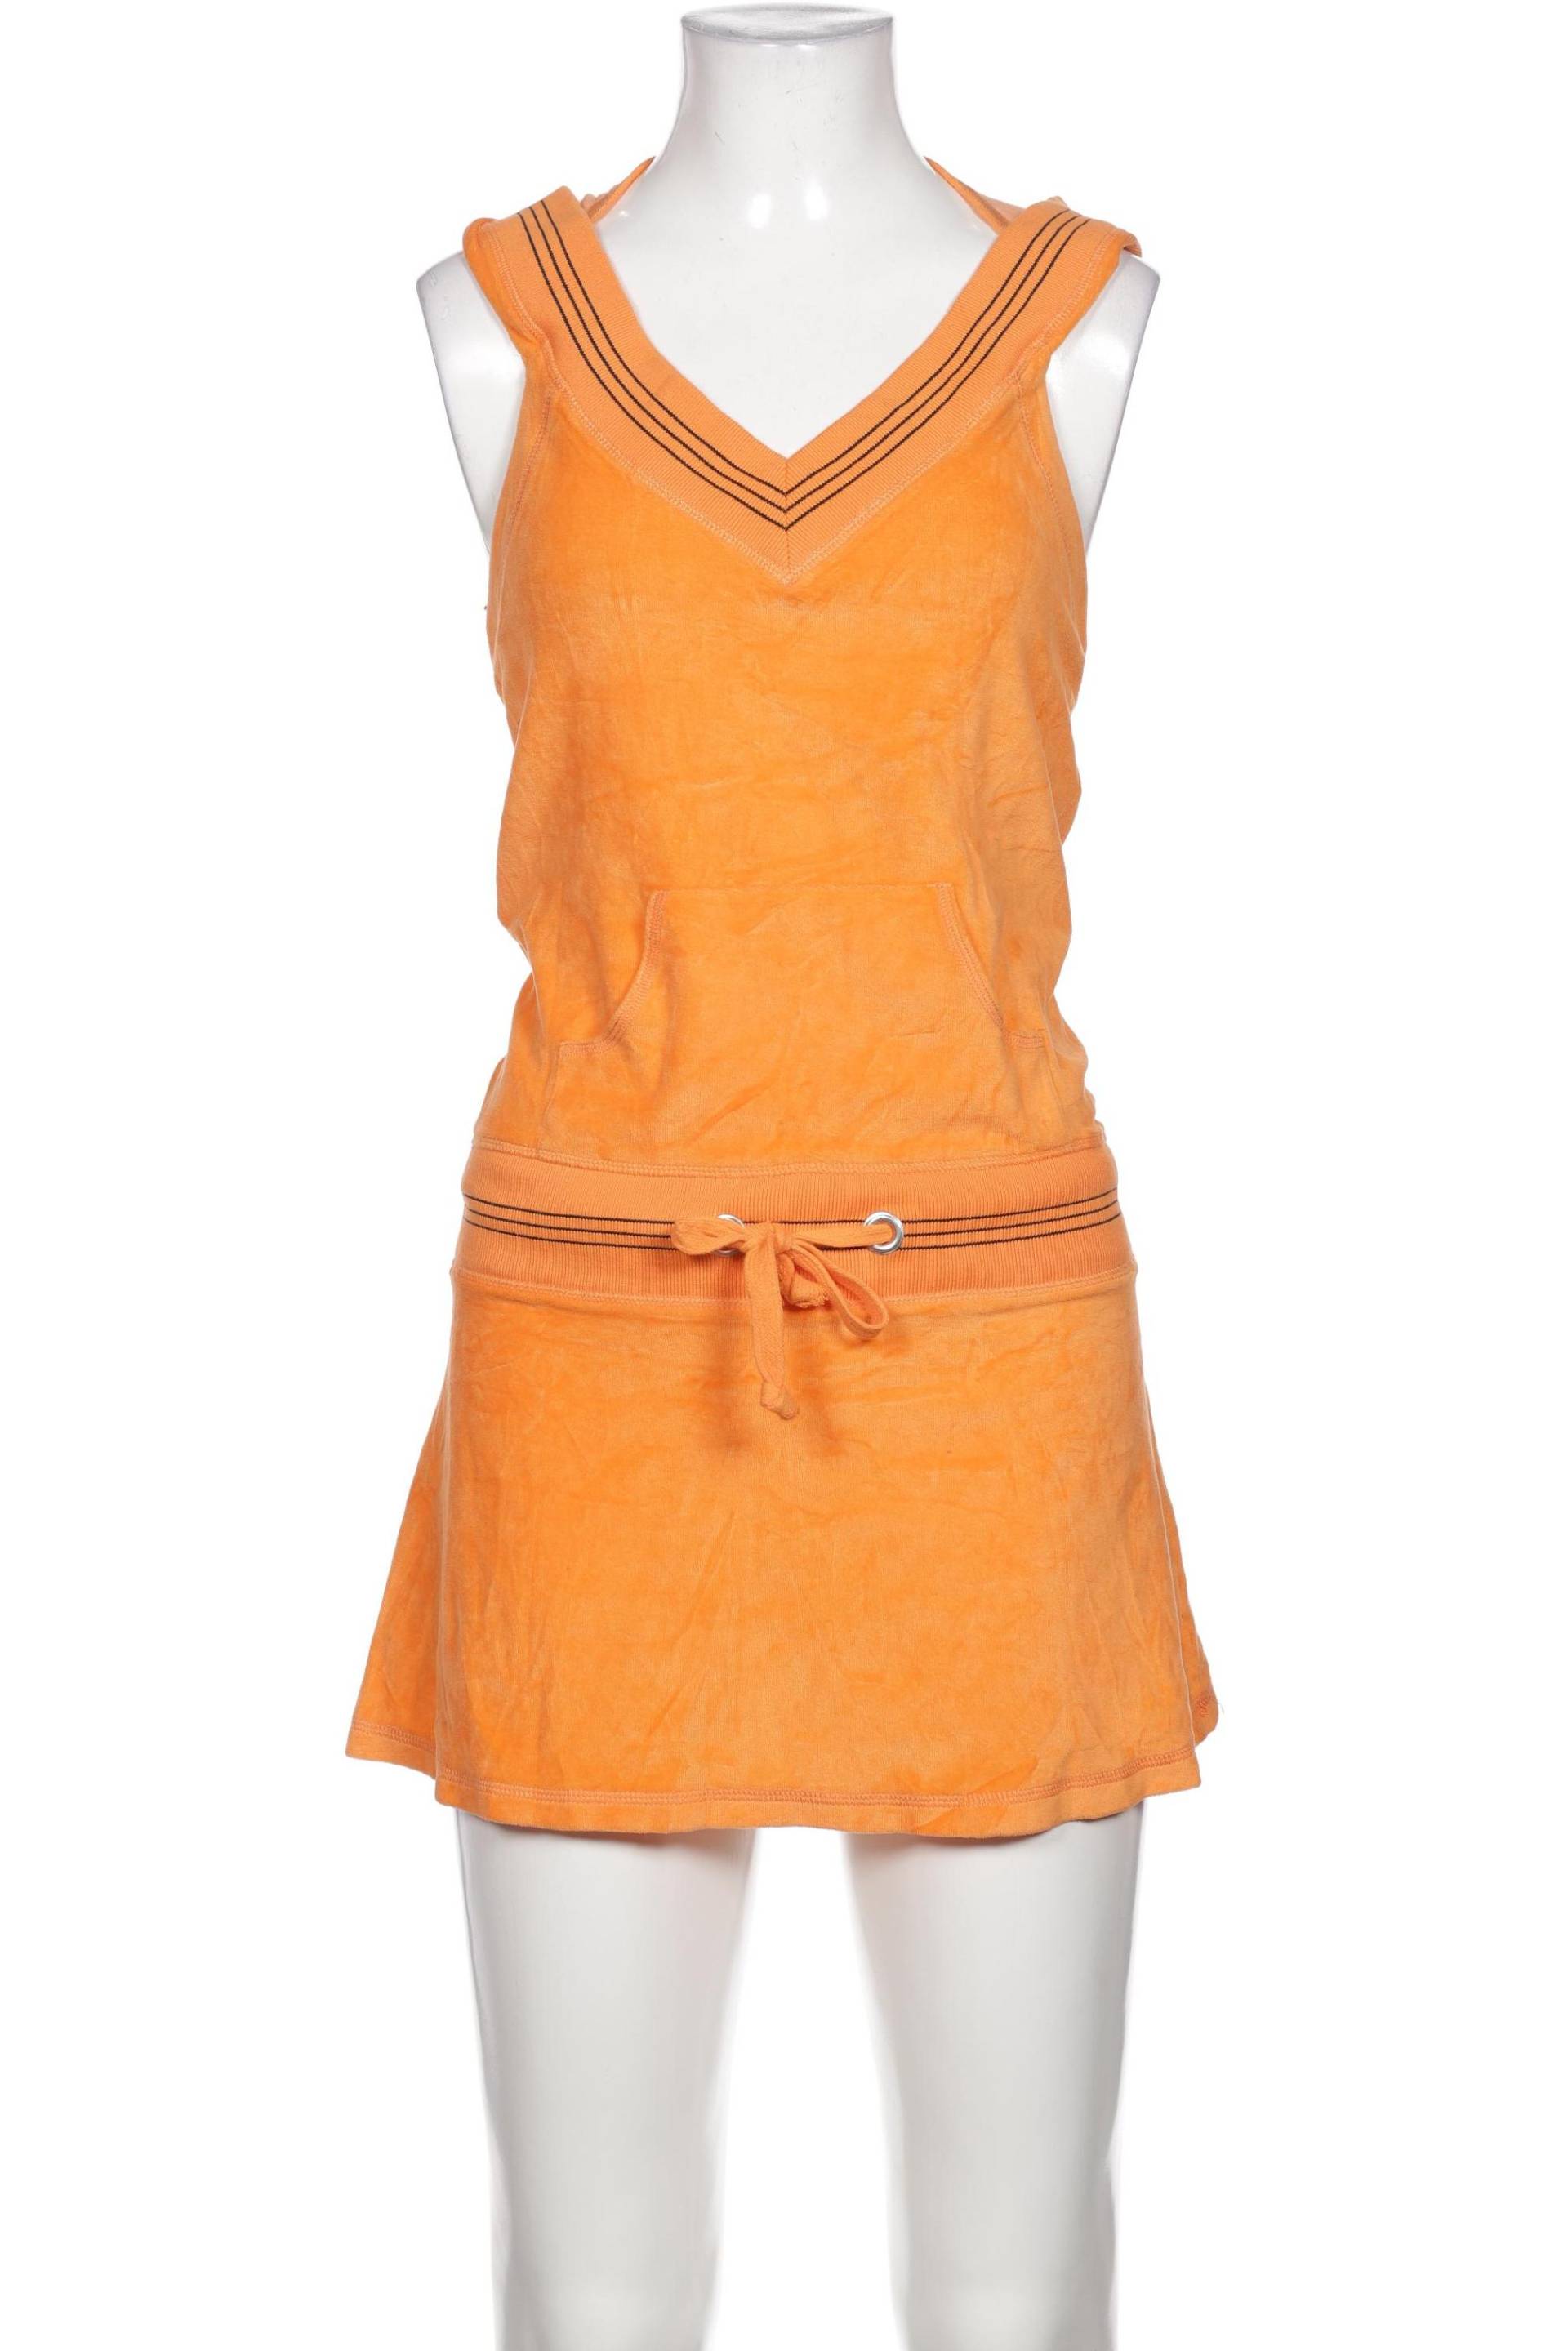 GANT Damen Kleid, orange von Gant